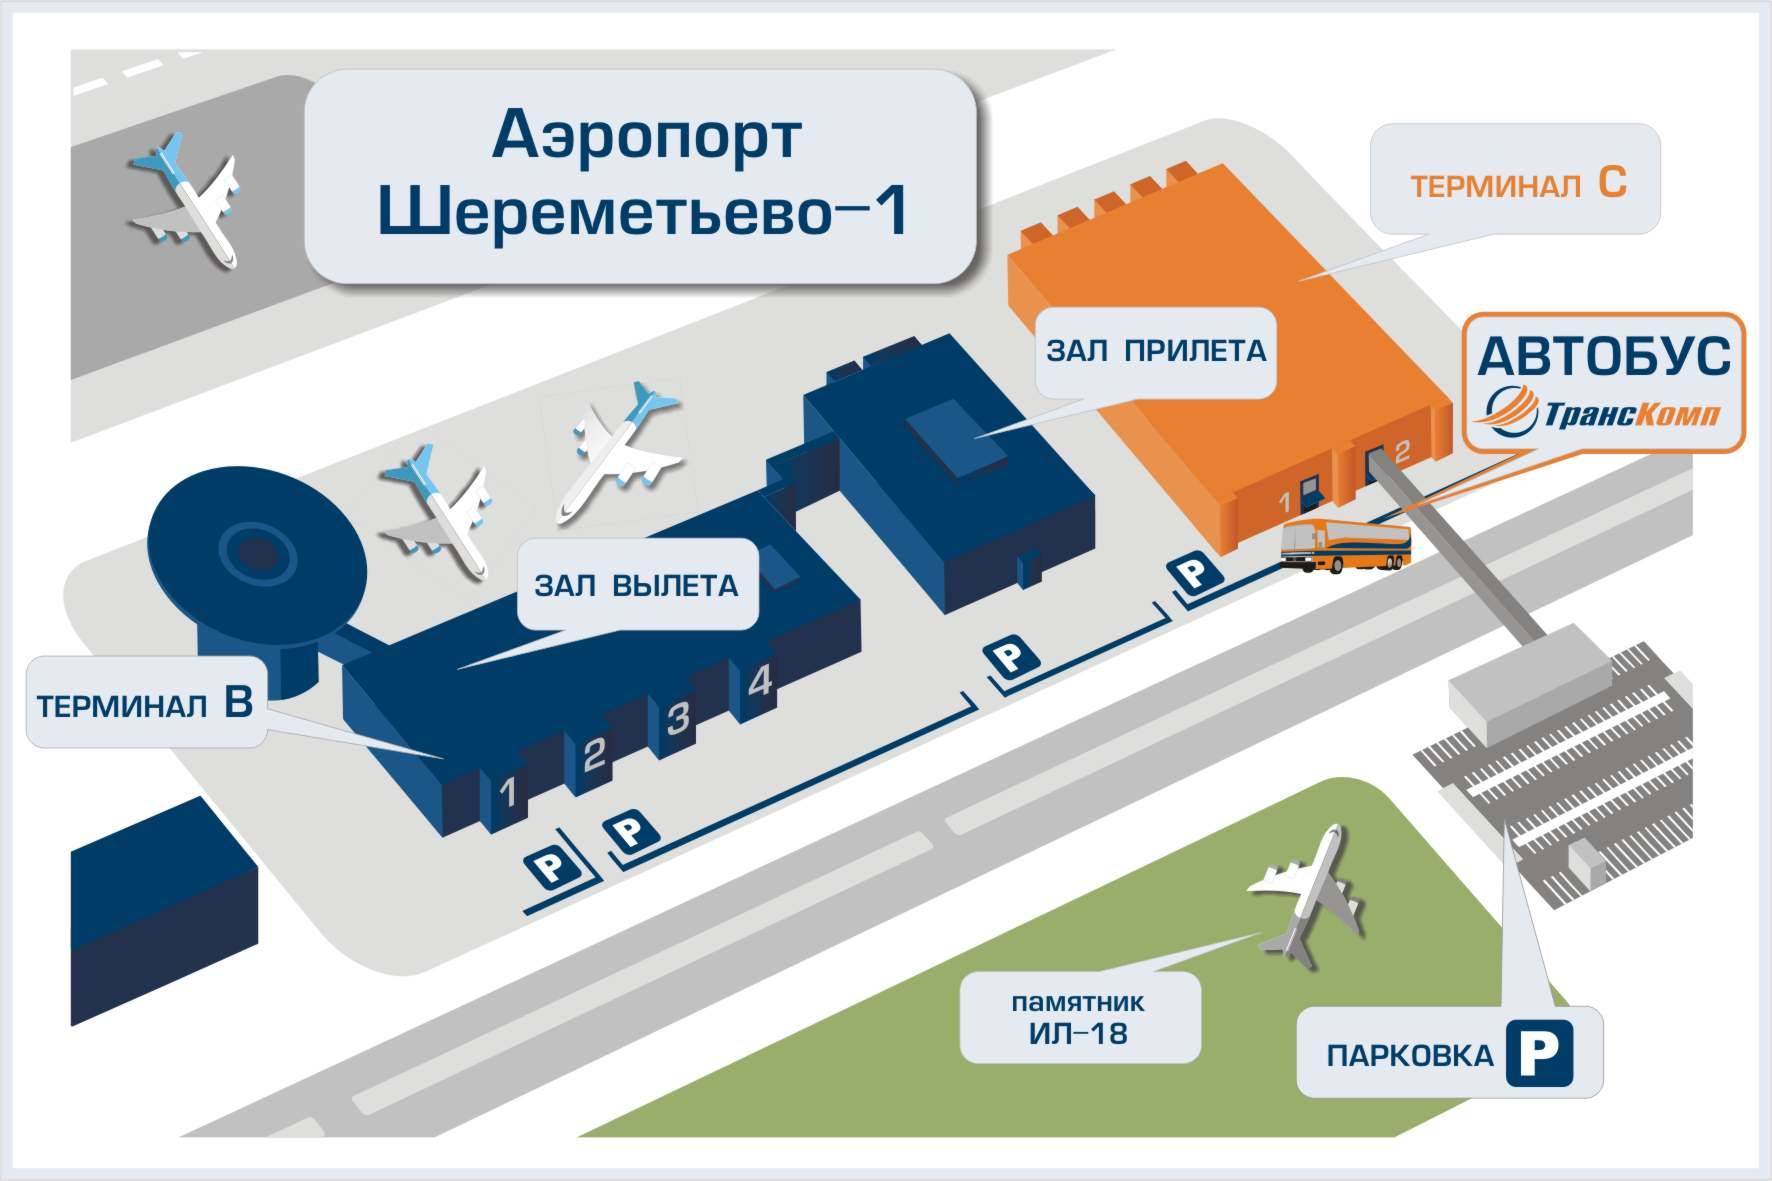 Шереметьево вылет аэрофлот какой терминал. Схема аэропорта Шереметьево с терминалами. Терминал в Шереметьево схема аэропорта терминал в. Аэропорт Шереметьево терминал b схема. Аэропорт Шереметьево расположение терминалов.